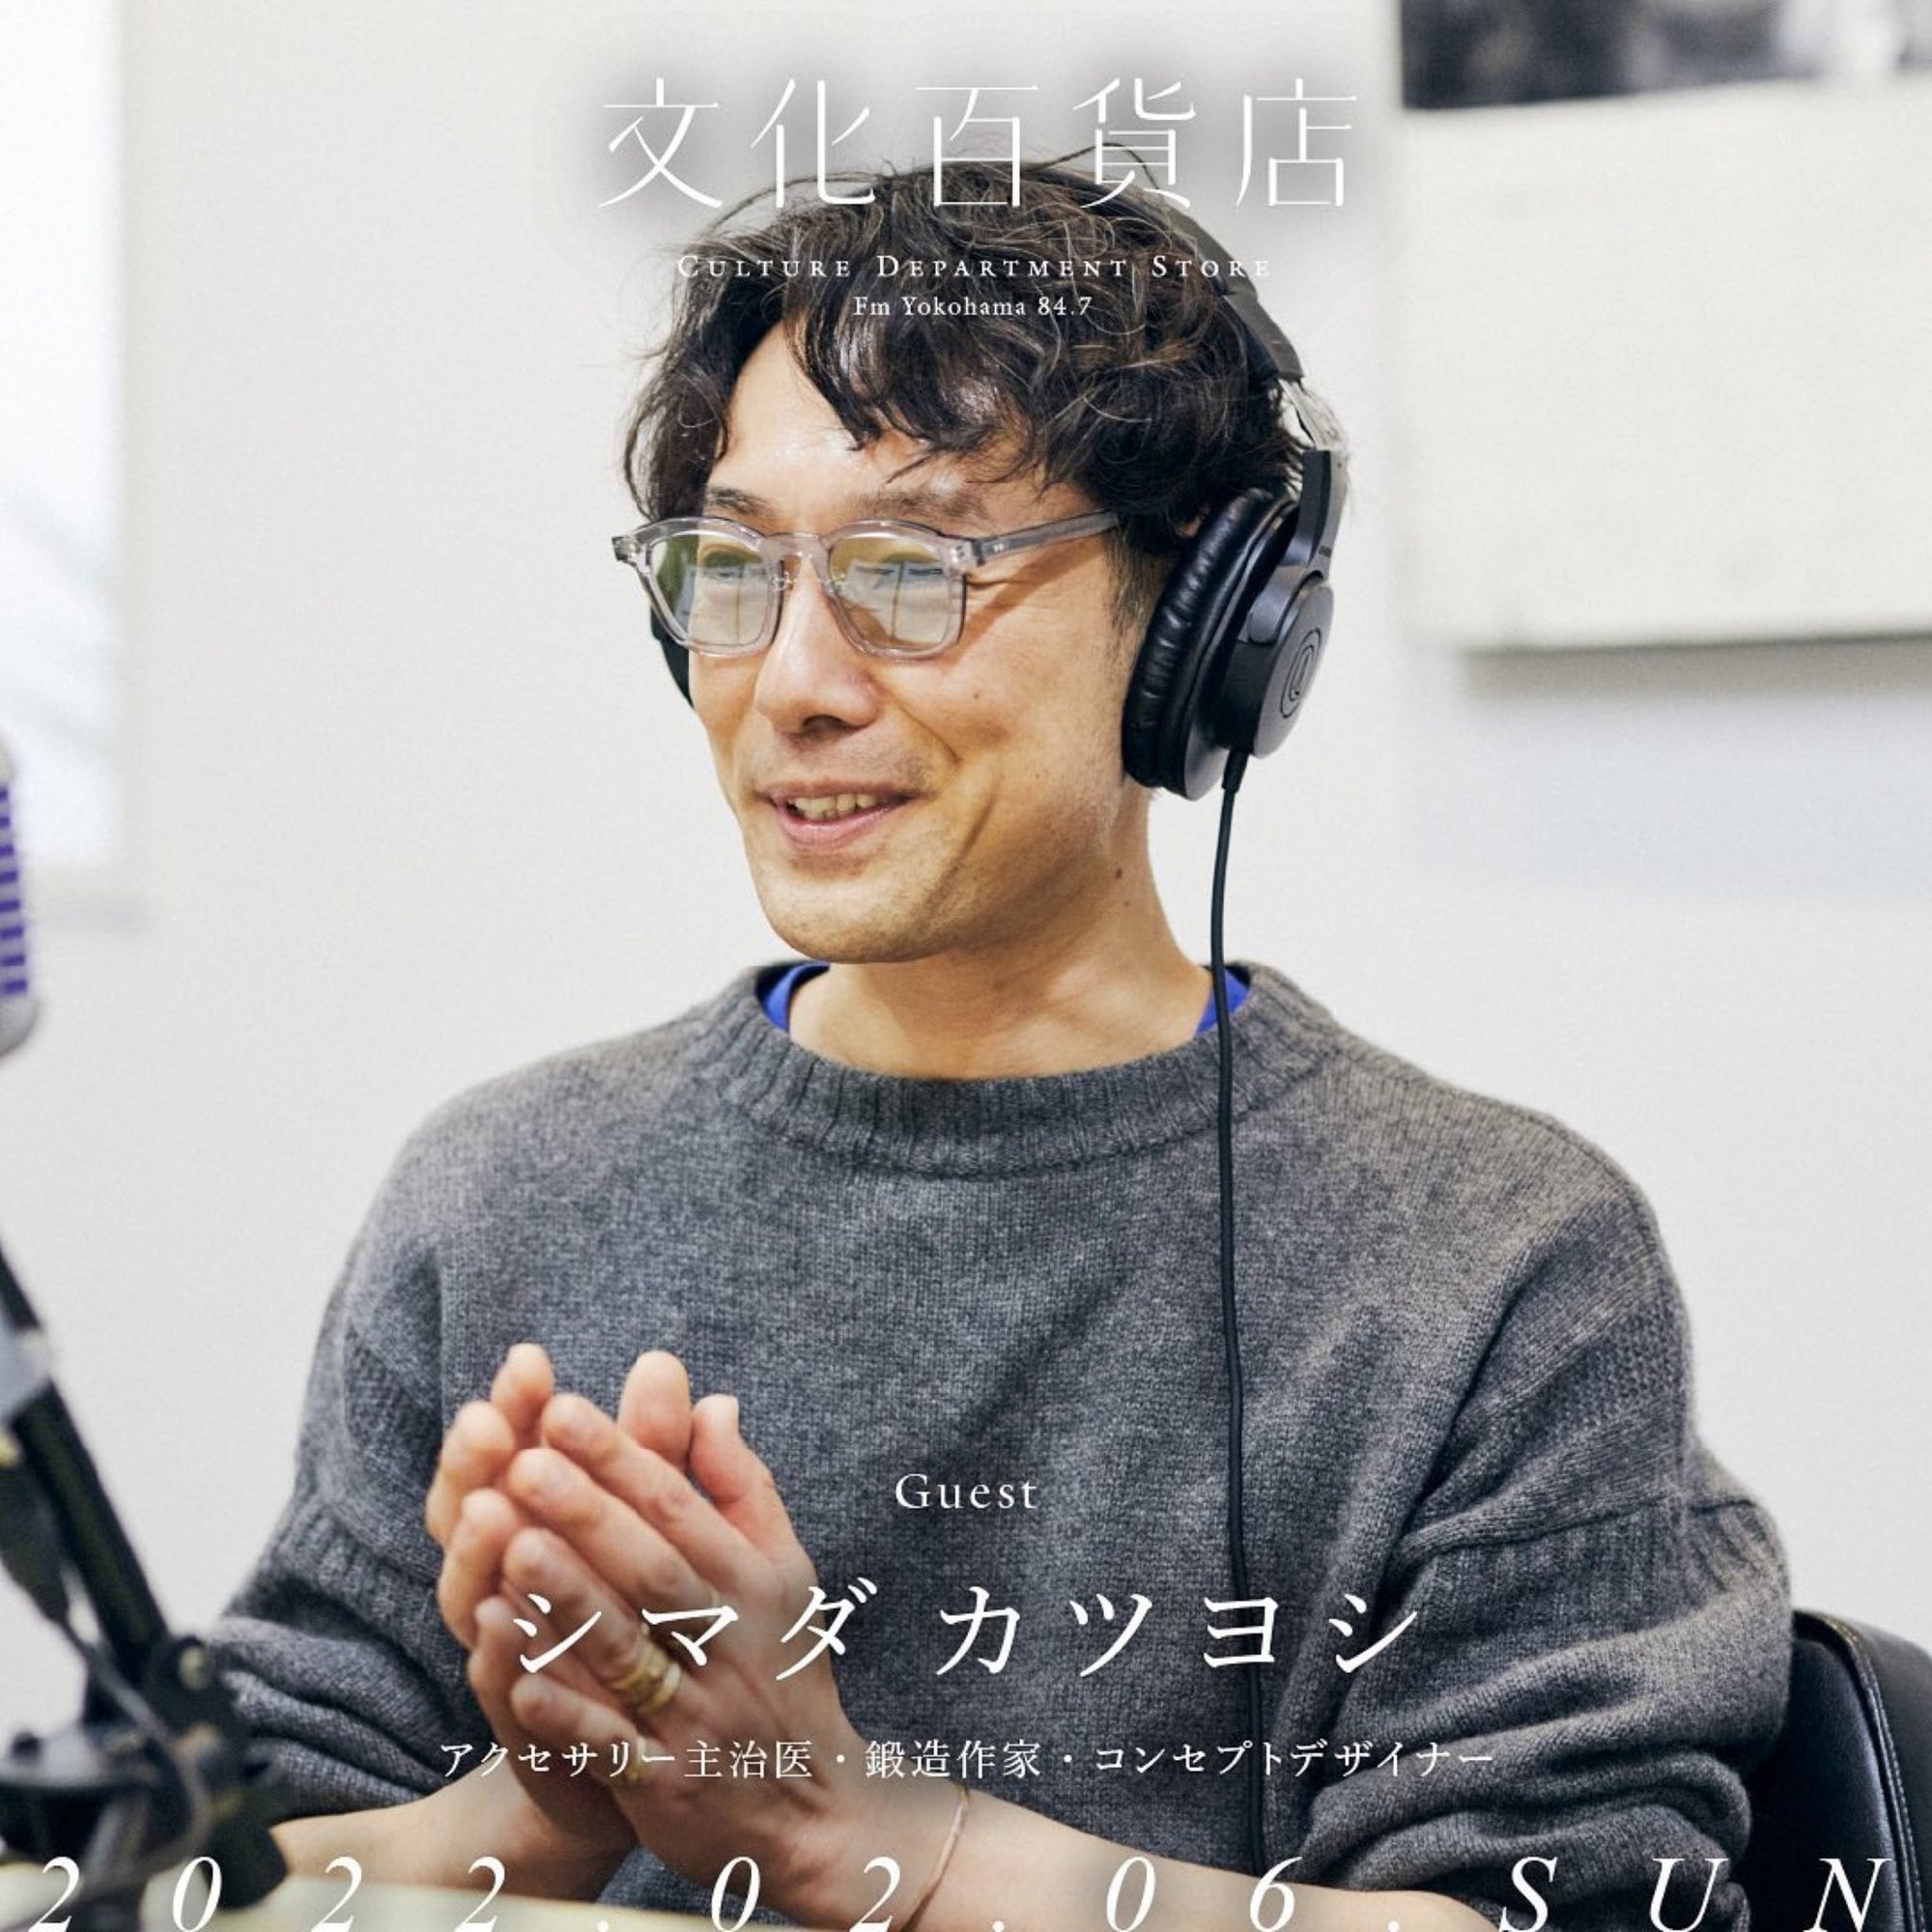 ラジオ出演 _ 文化百貨店 _ FM 84.7 - katsuyoshi_shimada